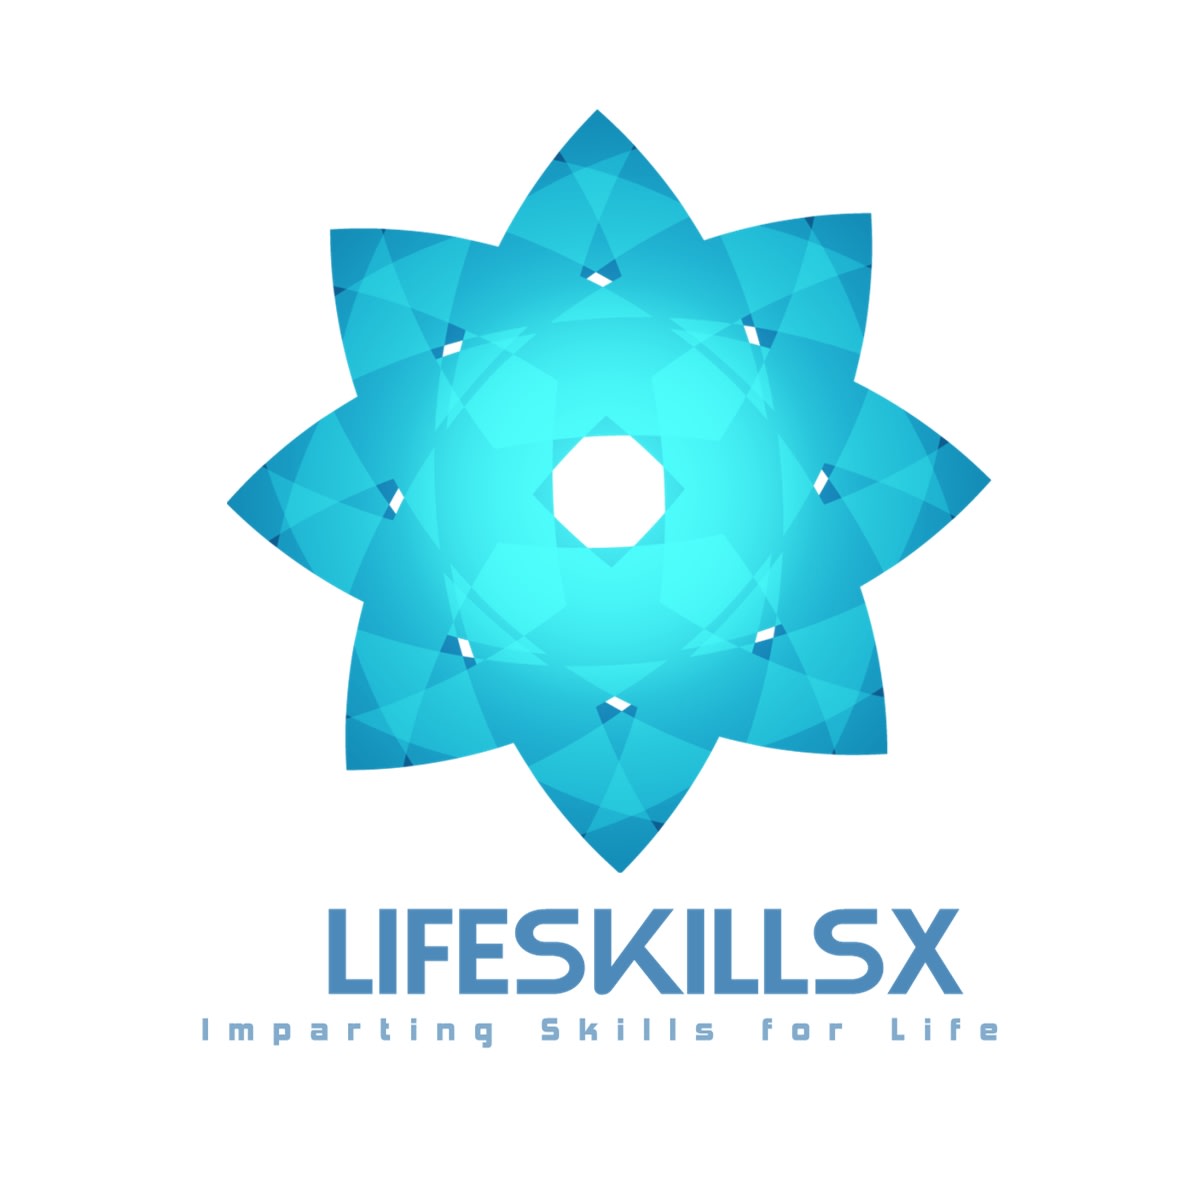 Lifeskillsx